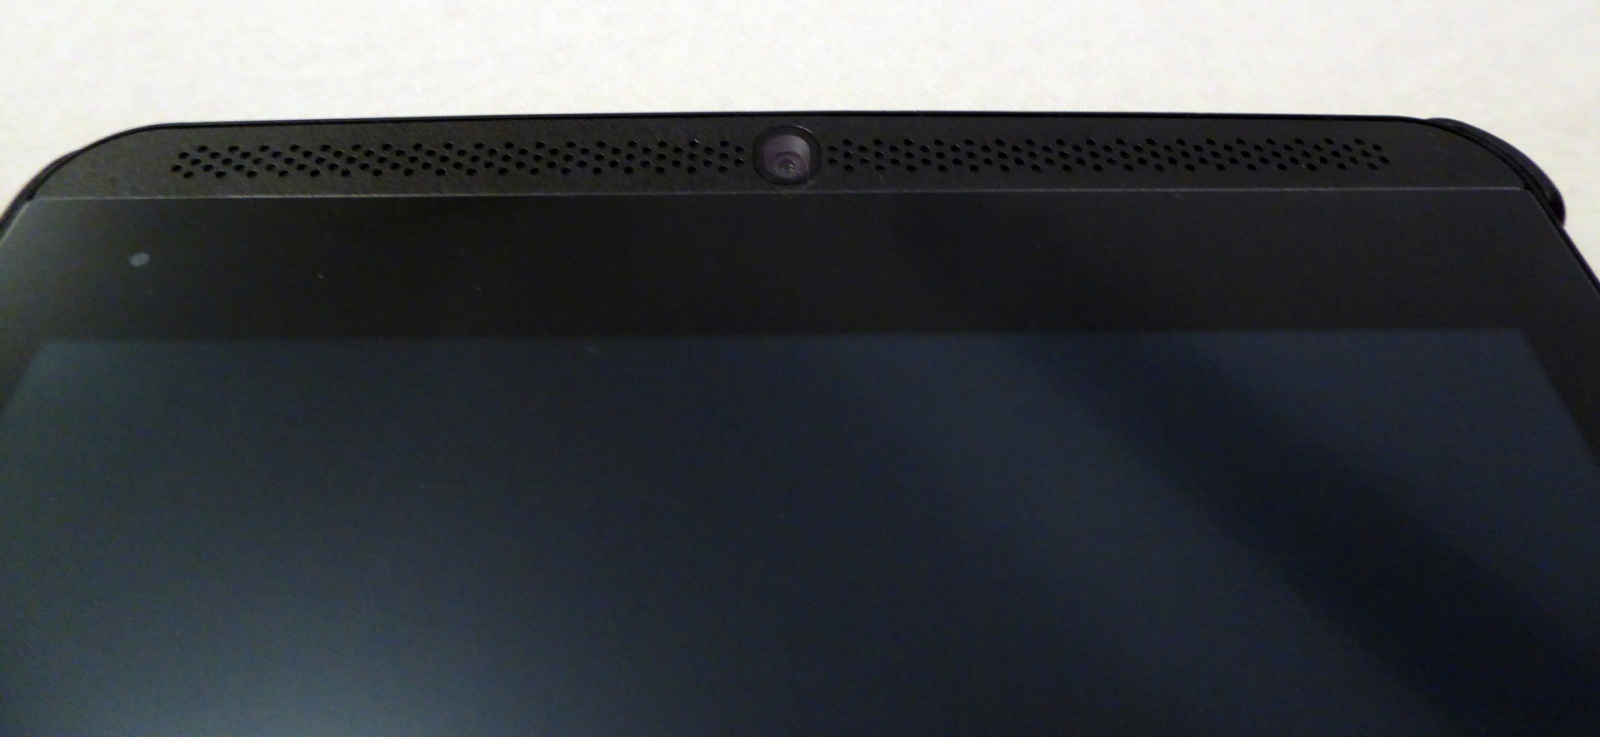 NVIDIA Shield Tablet: субъективный взгляд - 6